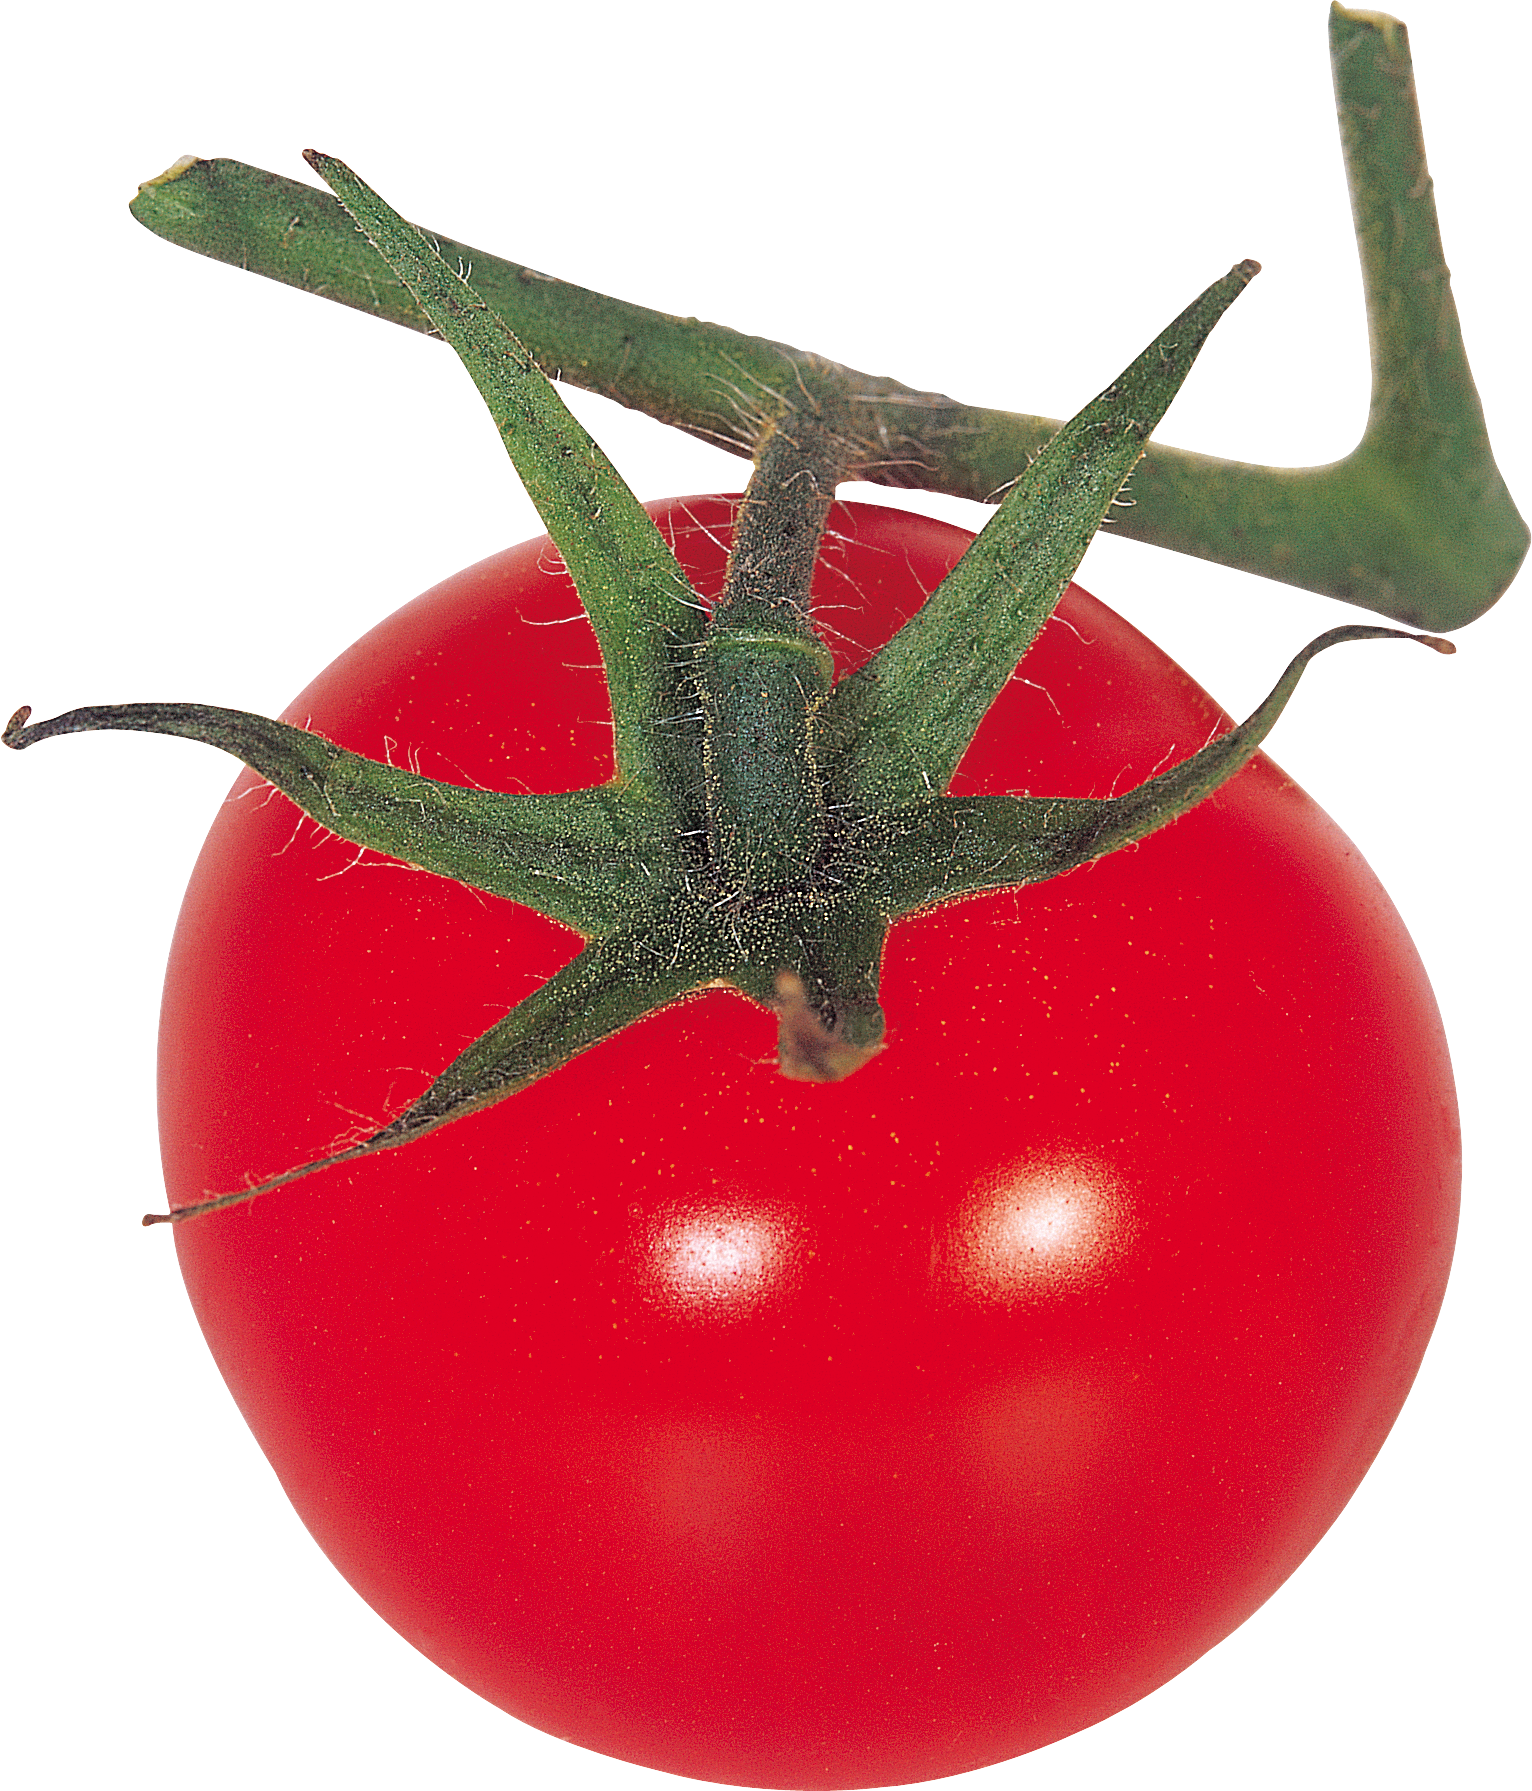 Tomat di cabang